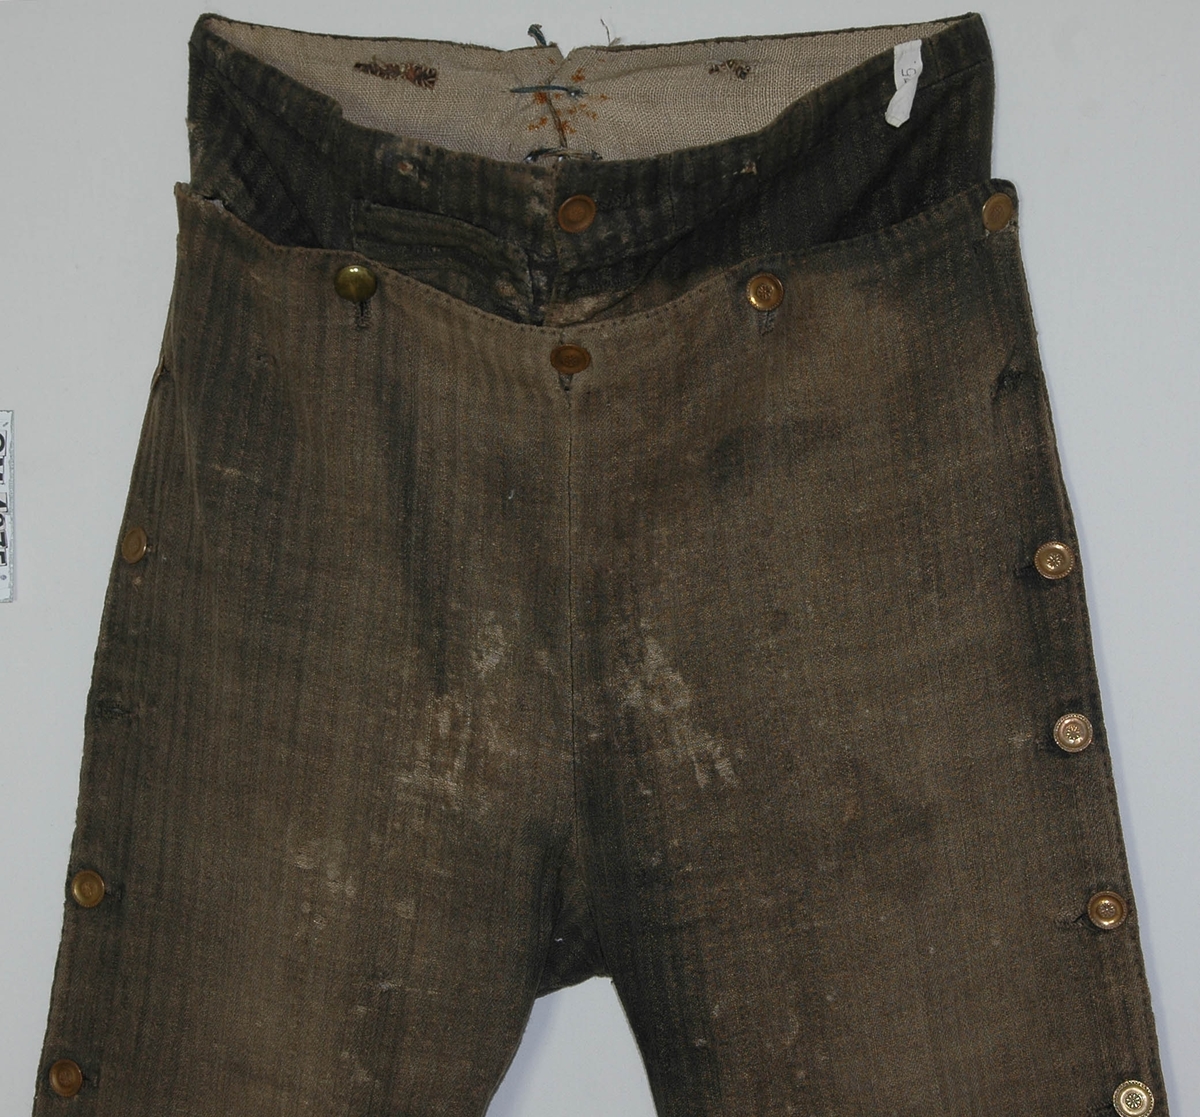 Uniformsbyxa från 1800-talet början.
Byxorna är grårandiga med knäppning i sidan med platta bronsknappar, med särskild linning av samma tyg upptill på framsidan.